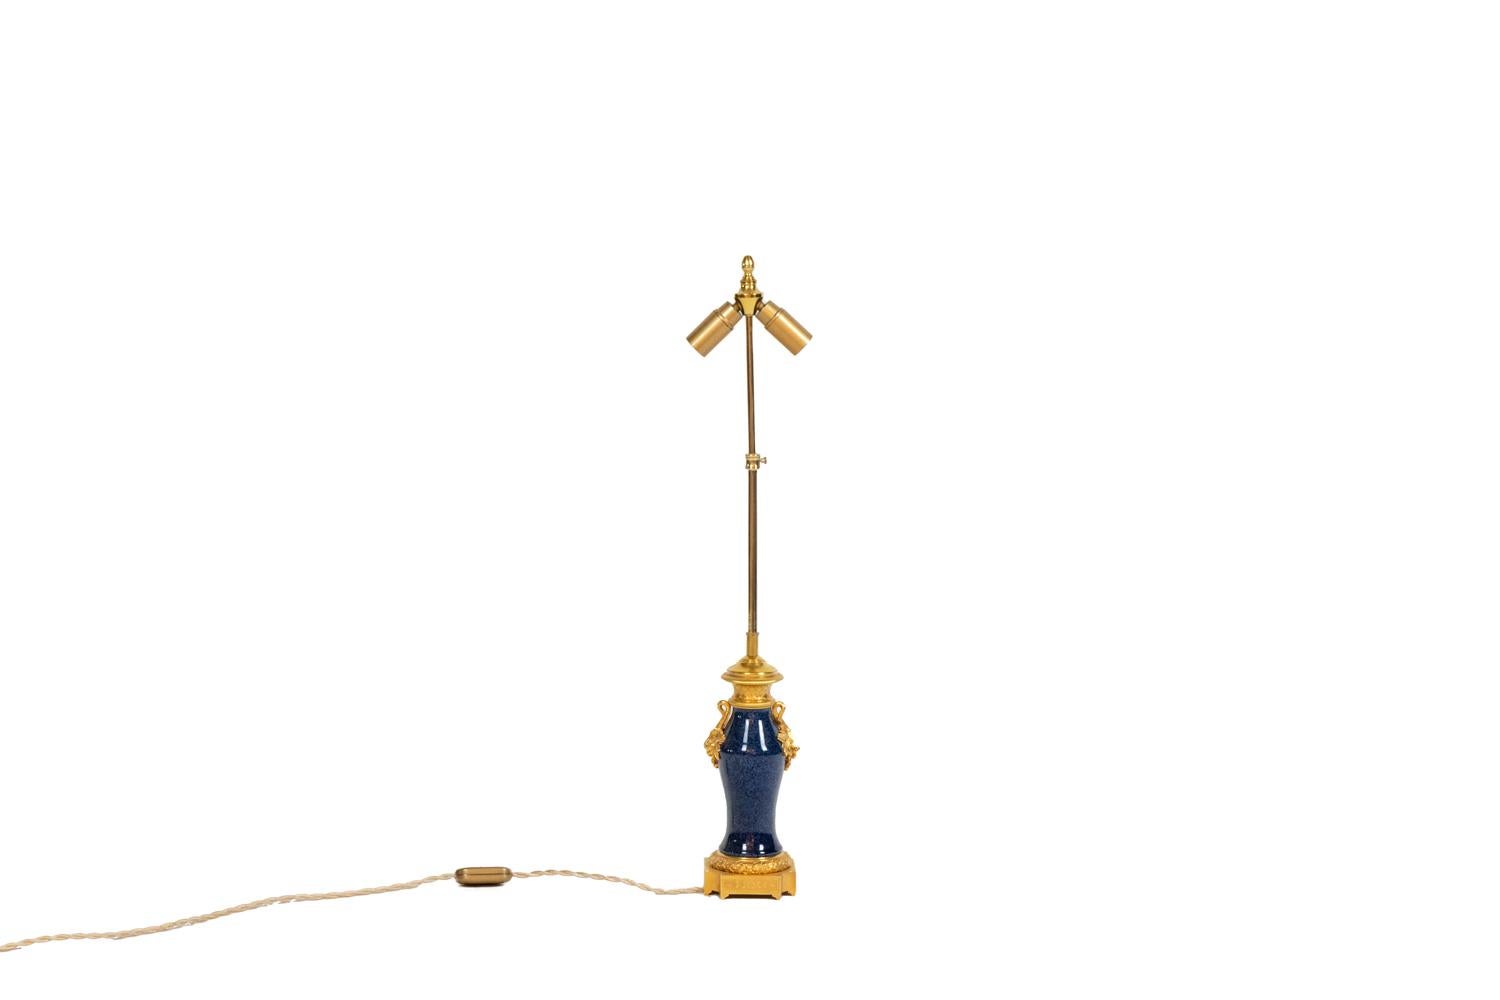 Lampe de table en porcelaine bleue et sertie de bronze doré, ornée de feuilles de vigne au sommet du corps, le haut du cadre orné d'une grille régulière et le pied de la base décoré de feuilles. Base quadripode avec forme incurvée aux angles et